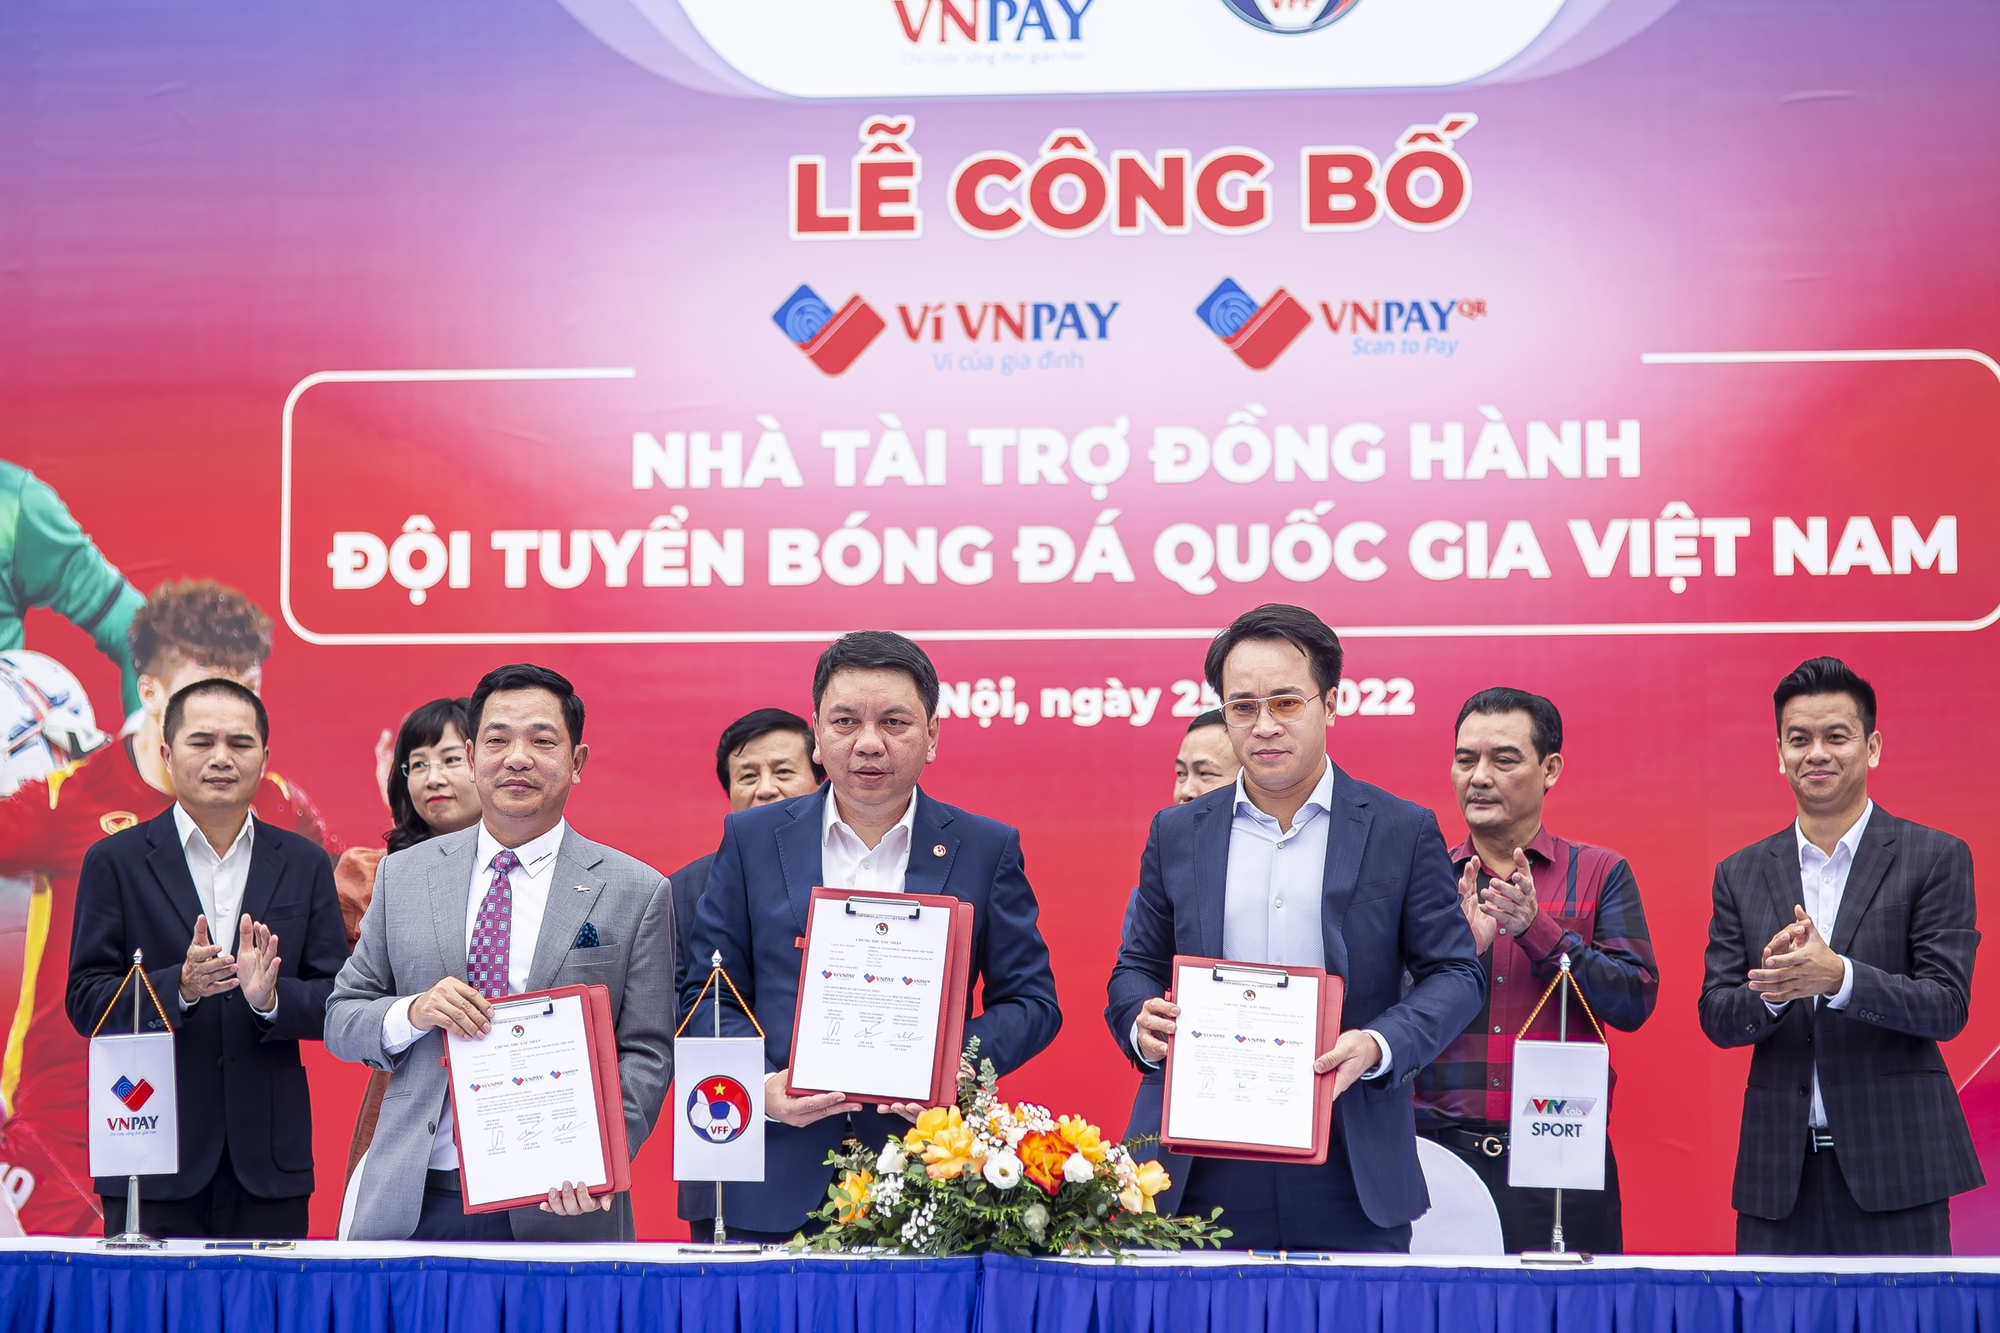 VNPay trở thành thường hiệu đồng hành cùng các ĐT bóng đá Việt Nam - Ảnh 1.